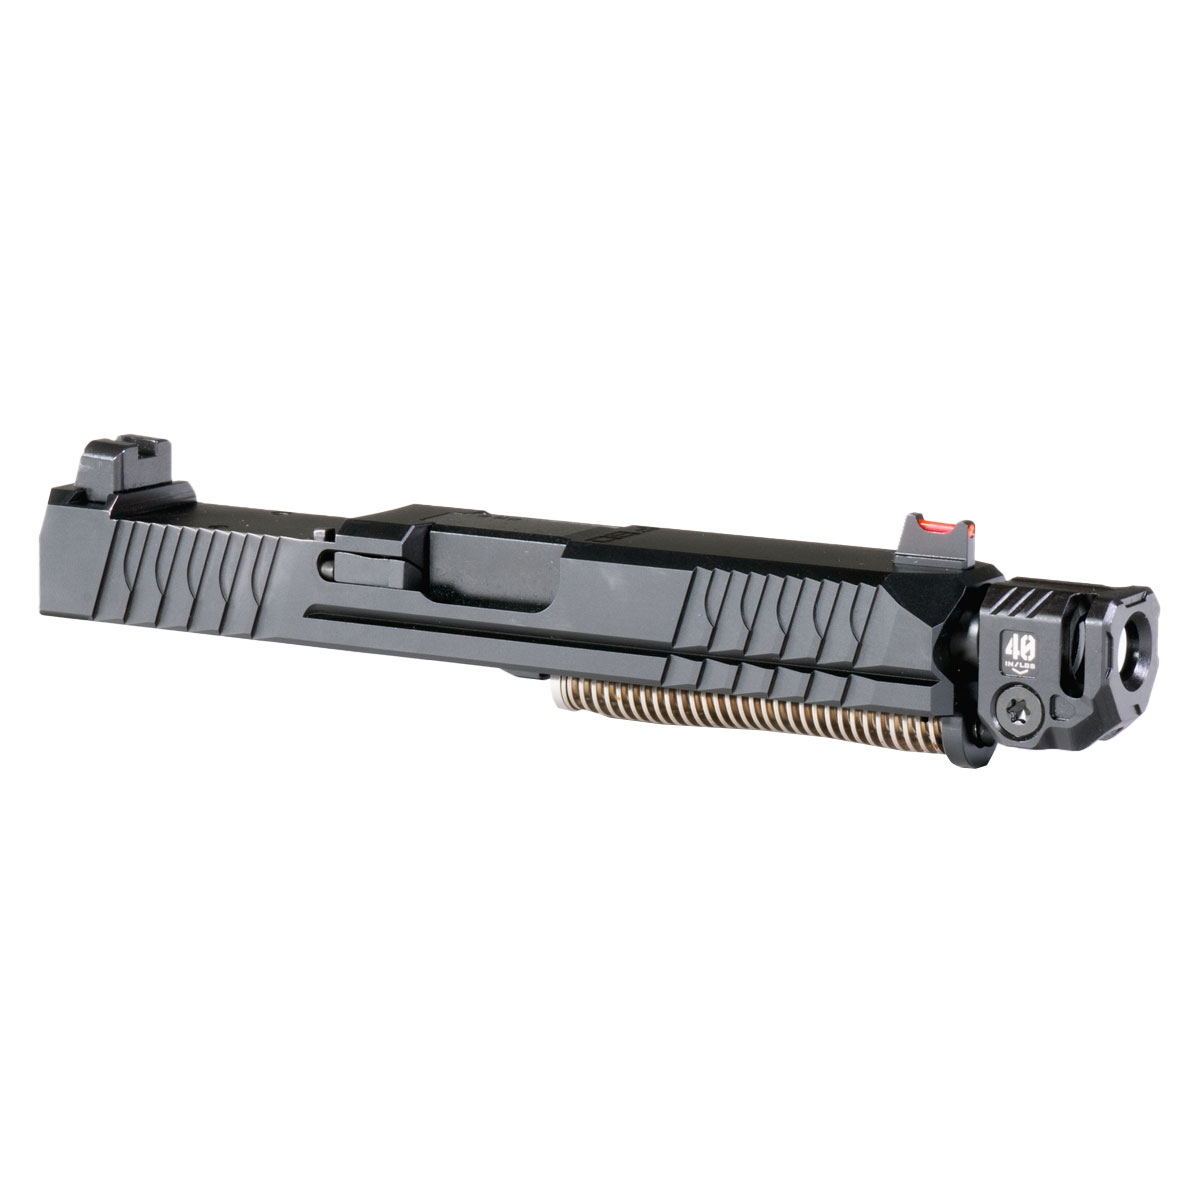 DD 'Devet' 9mm Complete Slide Kit - Glock 19 Gen 1-3 Compatible